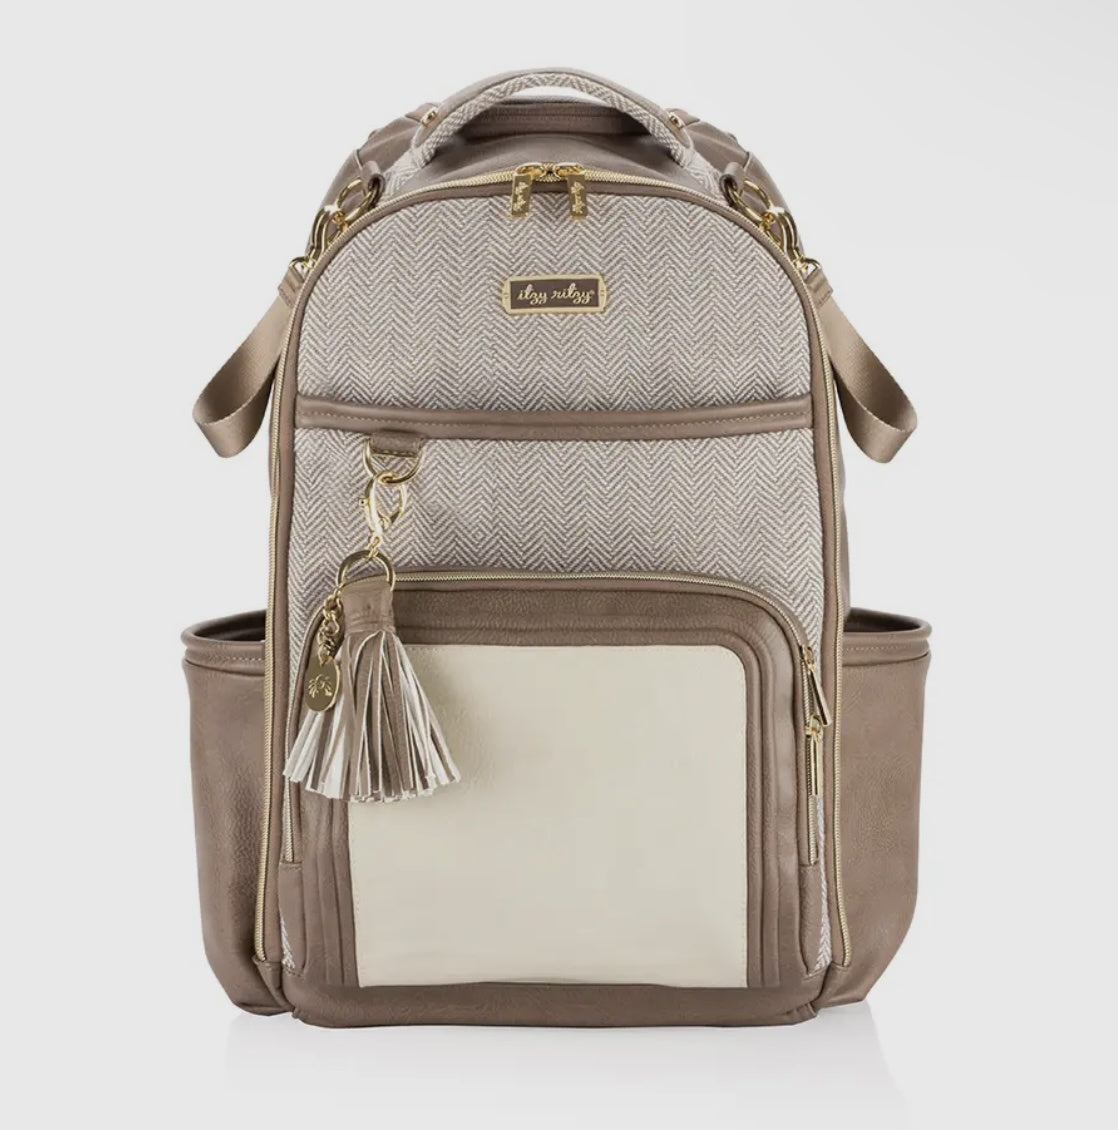 Vanilla Latte Boss Plus™ Backpack Diaper Bag